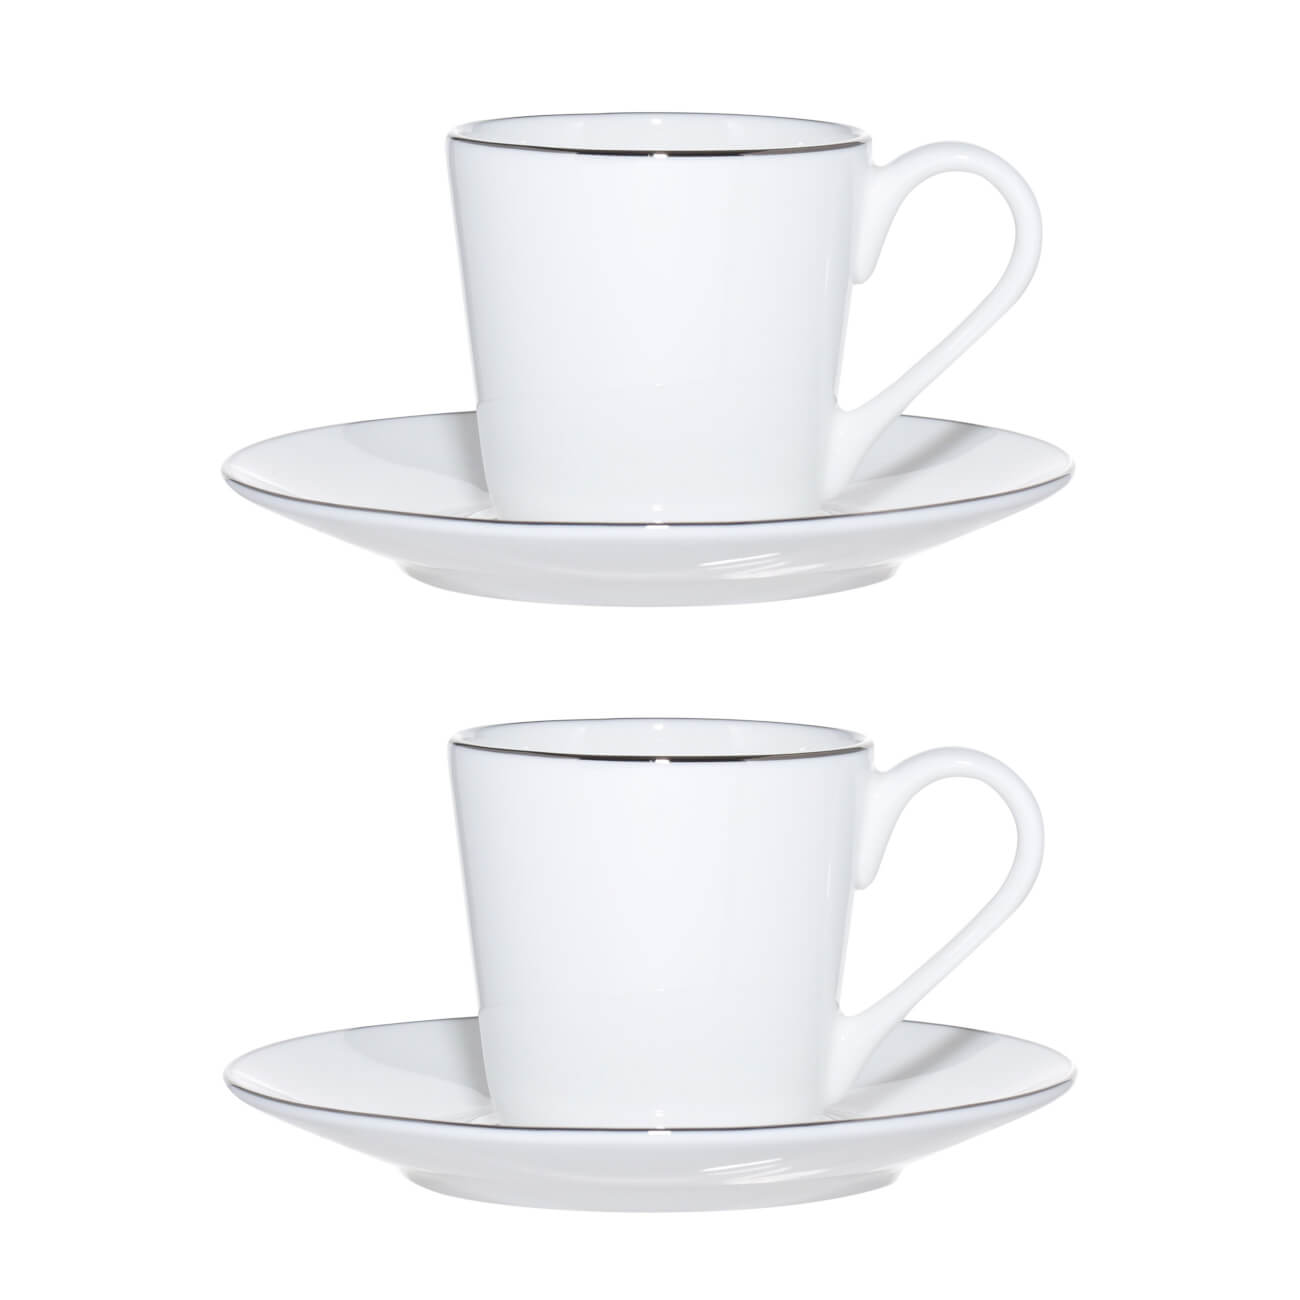 Kuchenland Пара кофейная, 2 перс, 4 пр, 90 мл, фарфор F, Antarctica чашка кофейная porcela du reussy 113310bl1 c00689